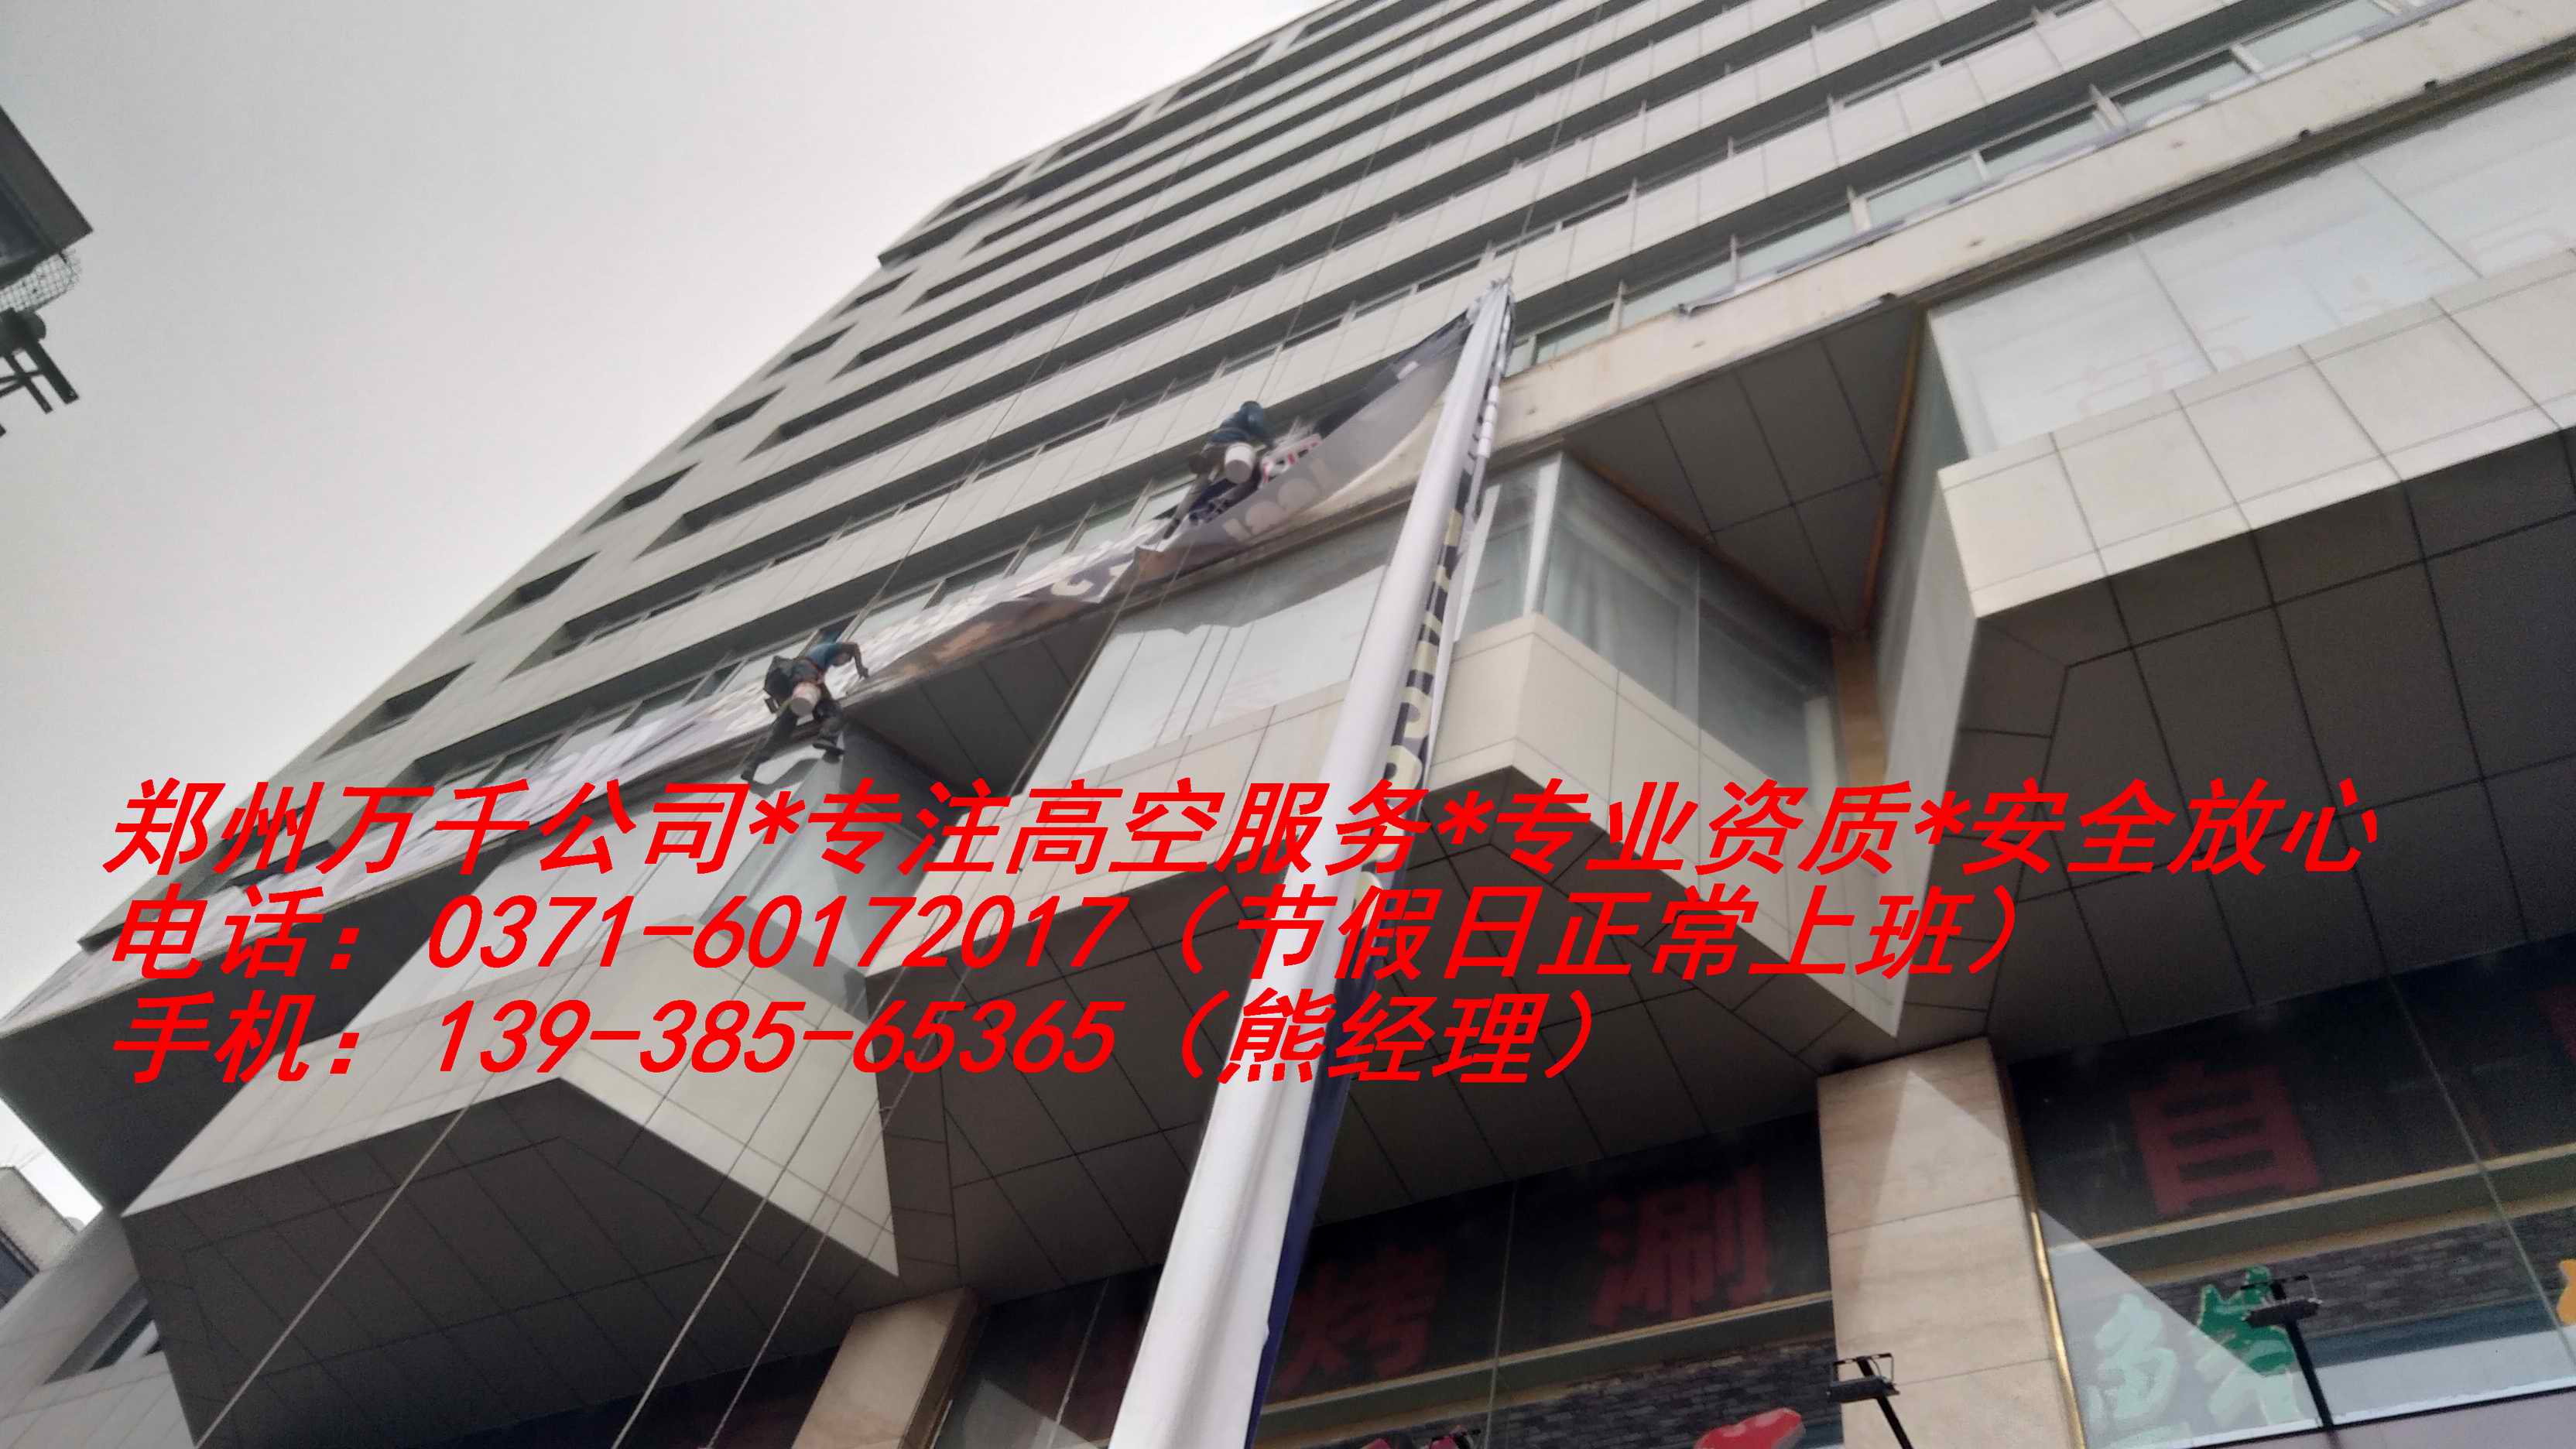 郑州中原区高空下水管道安装公司、服务咨询、报价电话号码13938565365